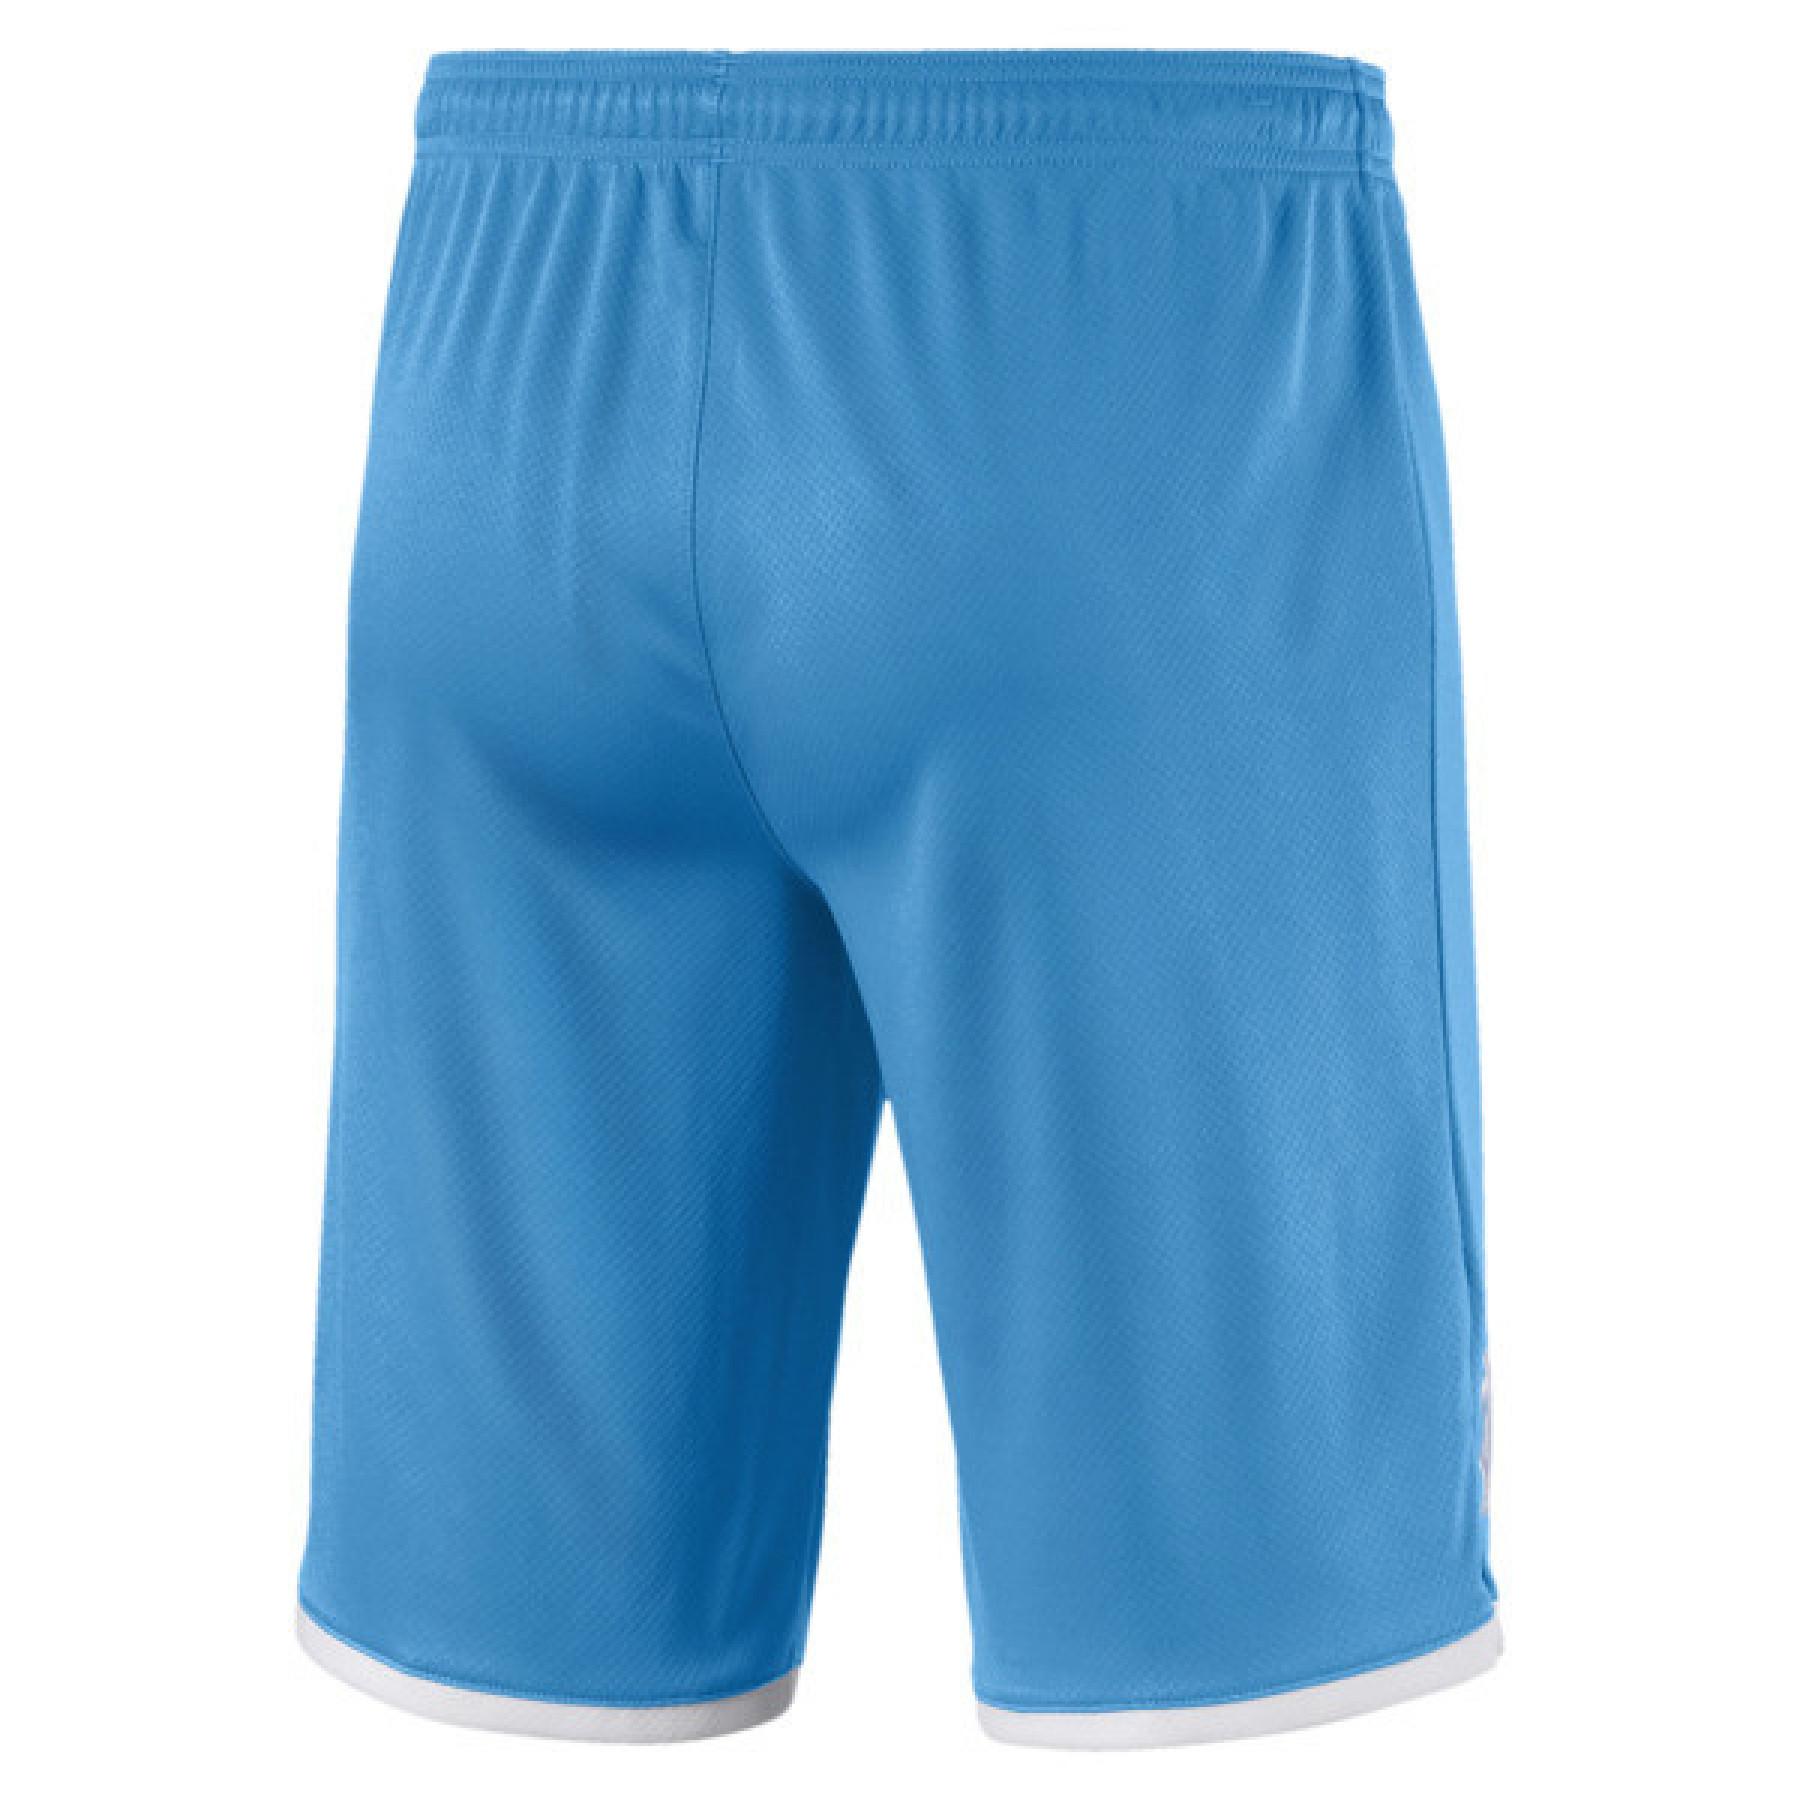 Pantalones cortos para exteriores OM 2019/20